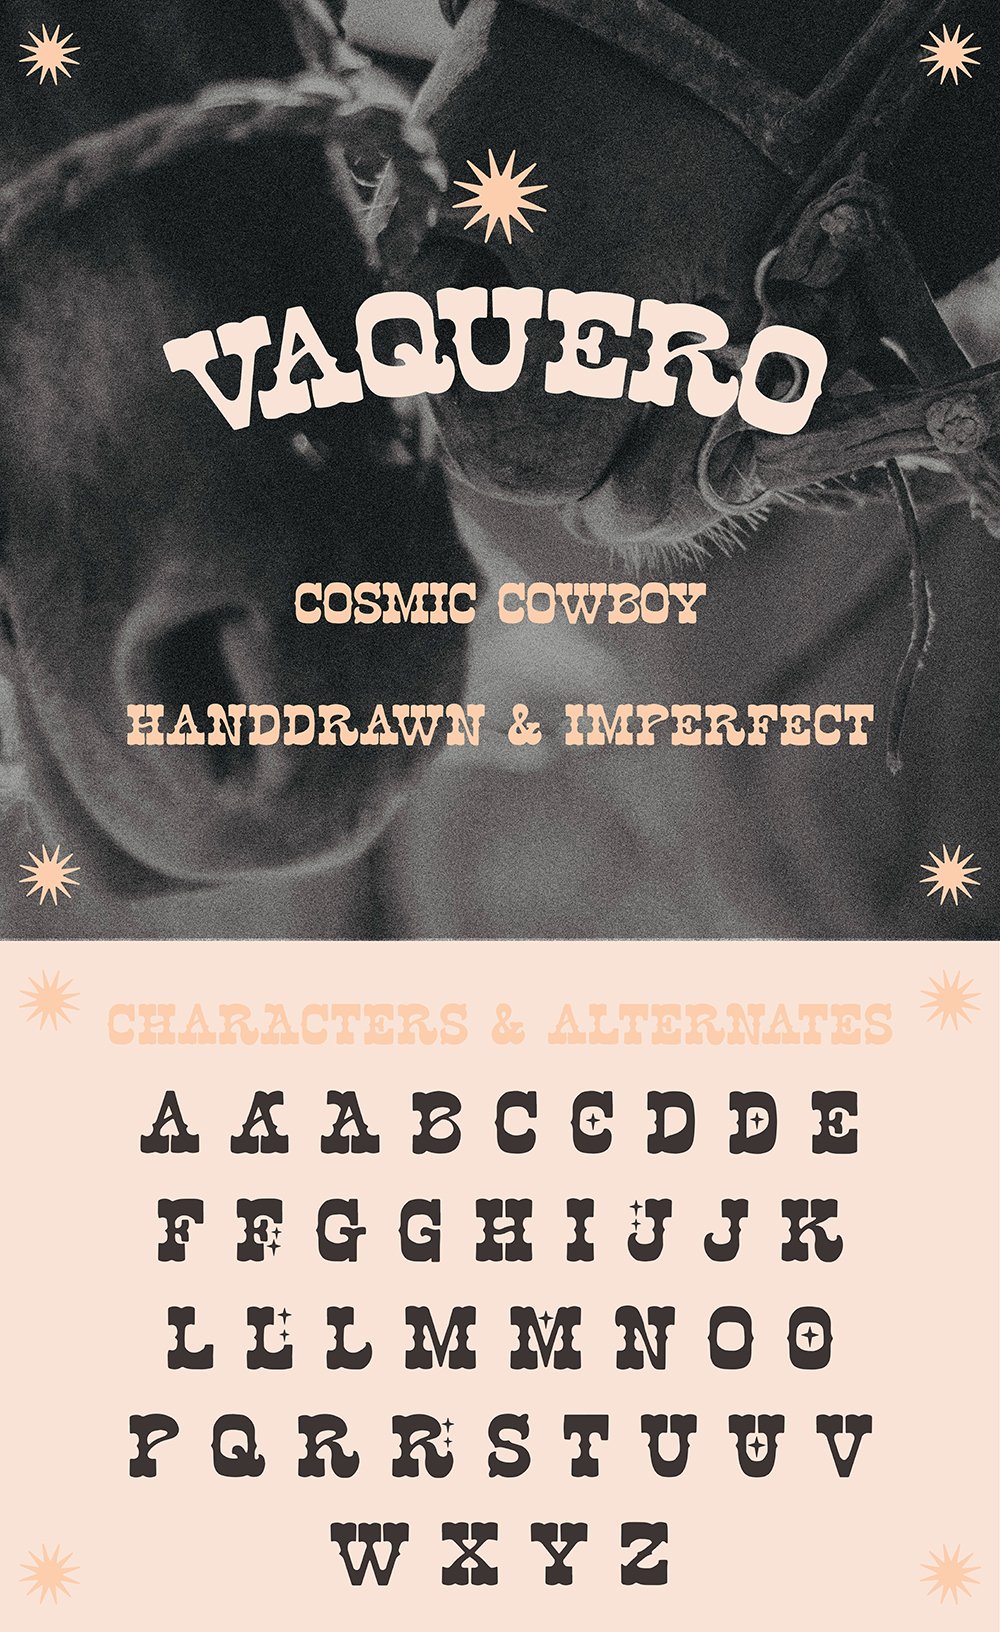 Vaquero-header-06-web.jpg